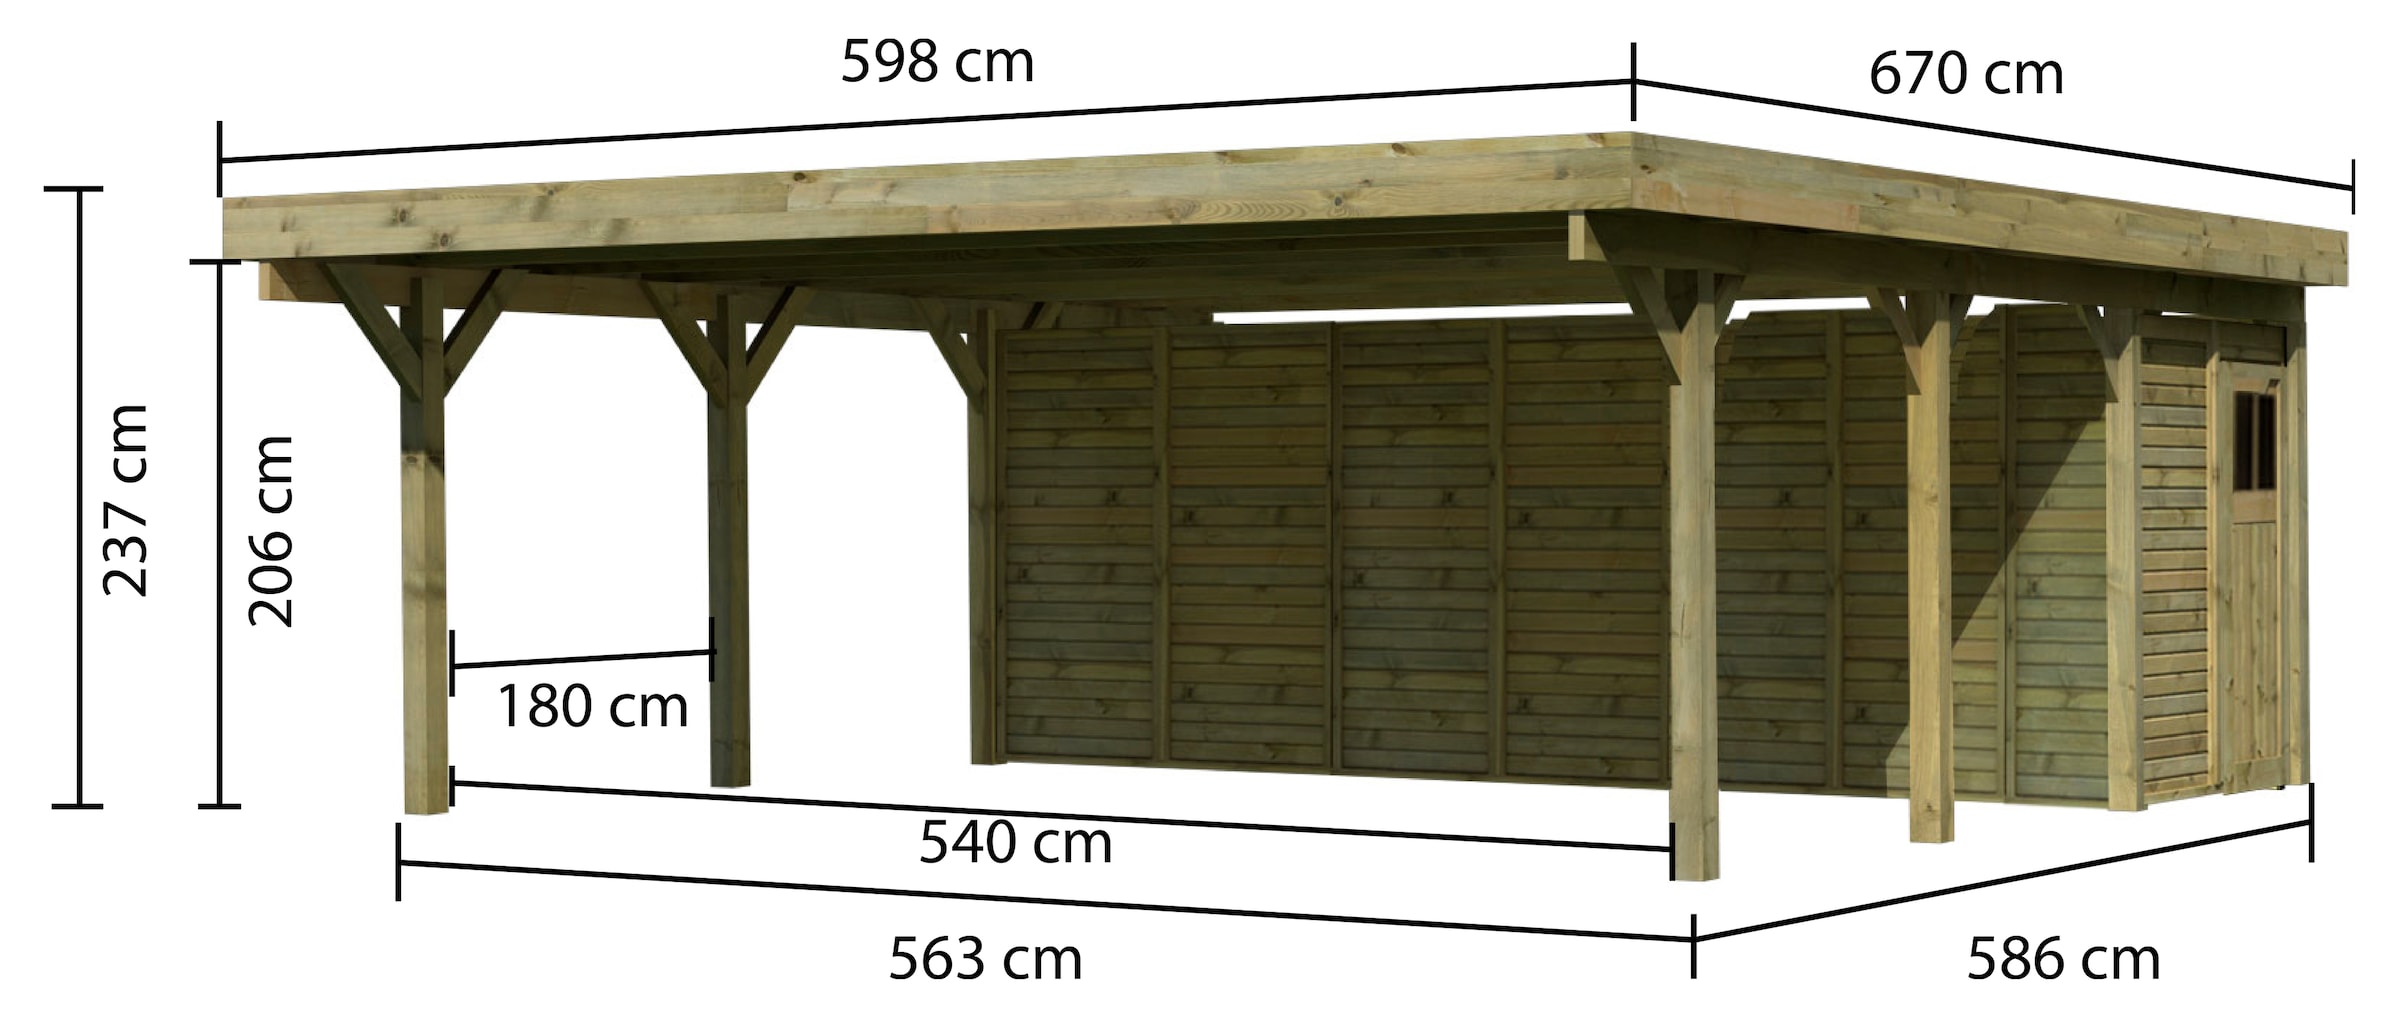 Karibu Doppelcarport »Classic 2«, Holz, 540 cm, braun, mit Geräteraum